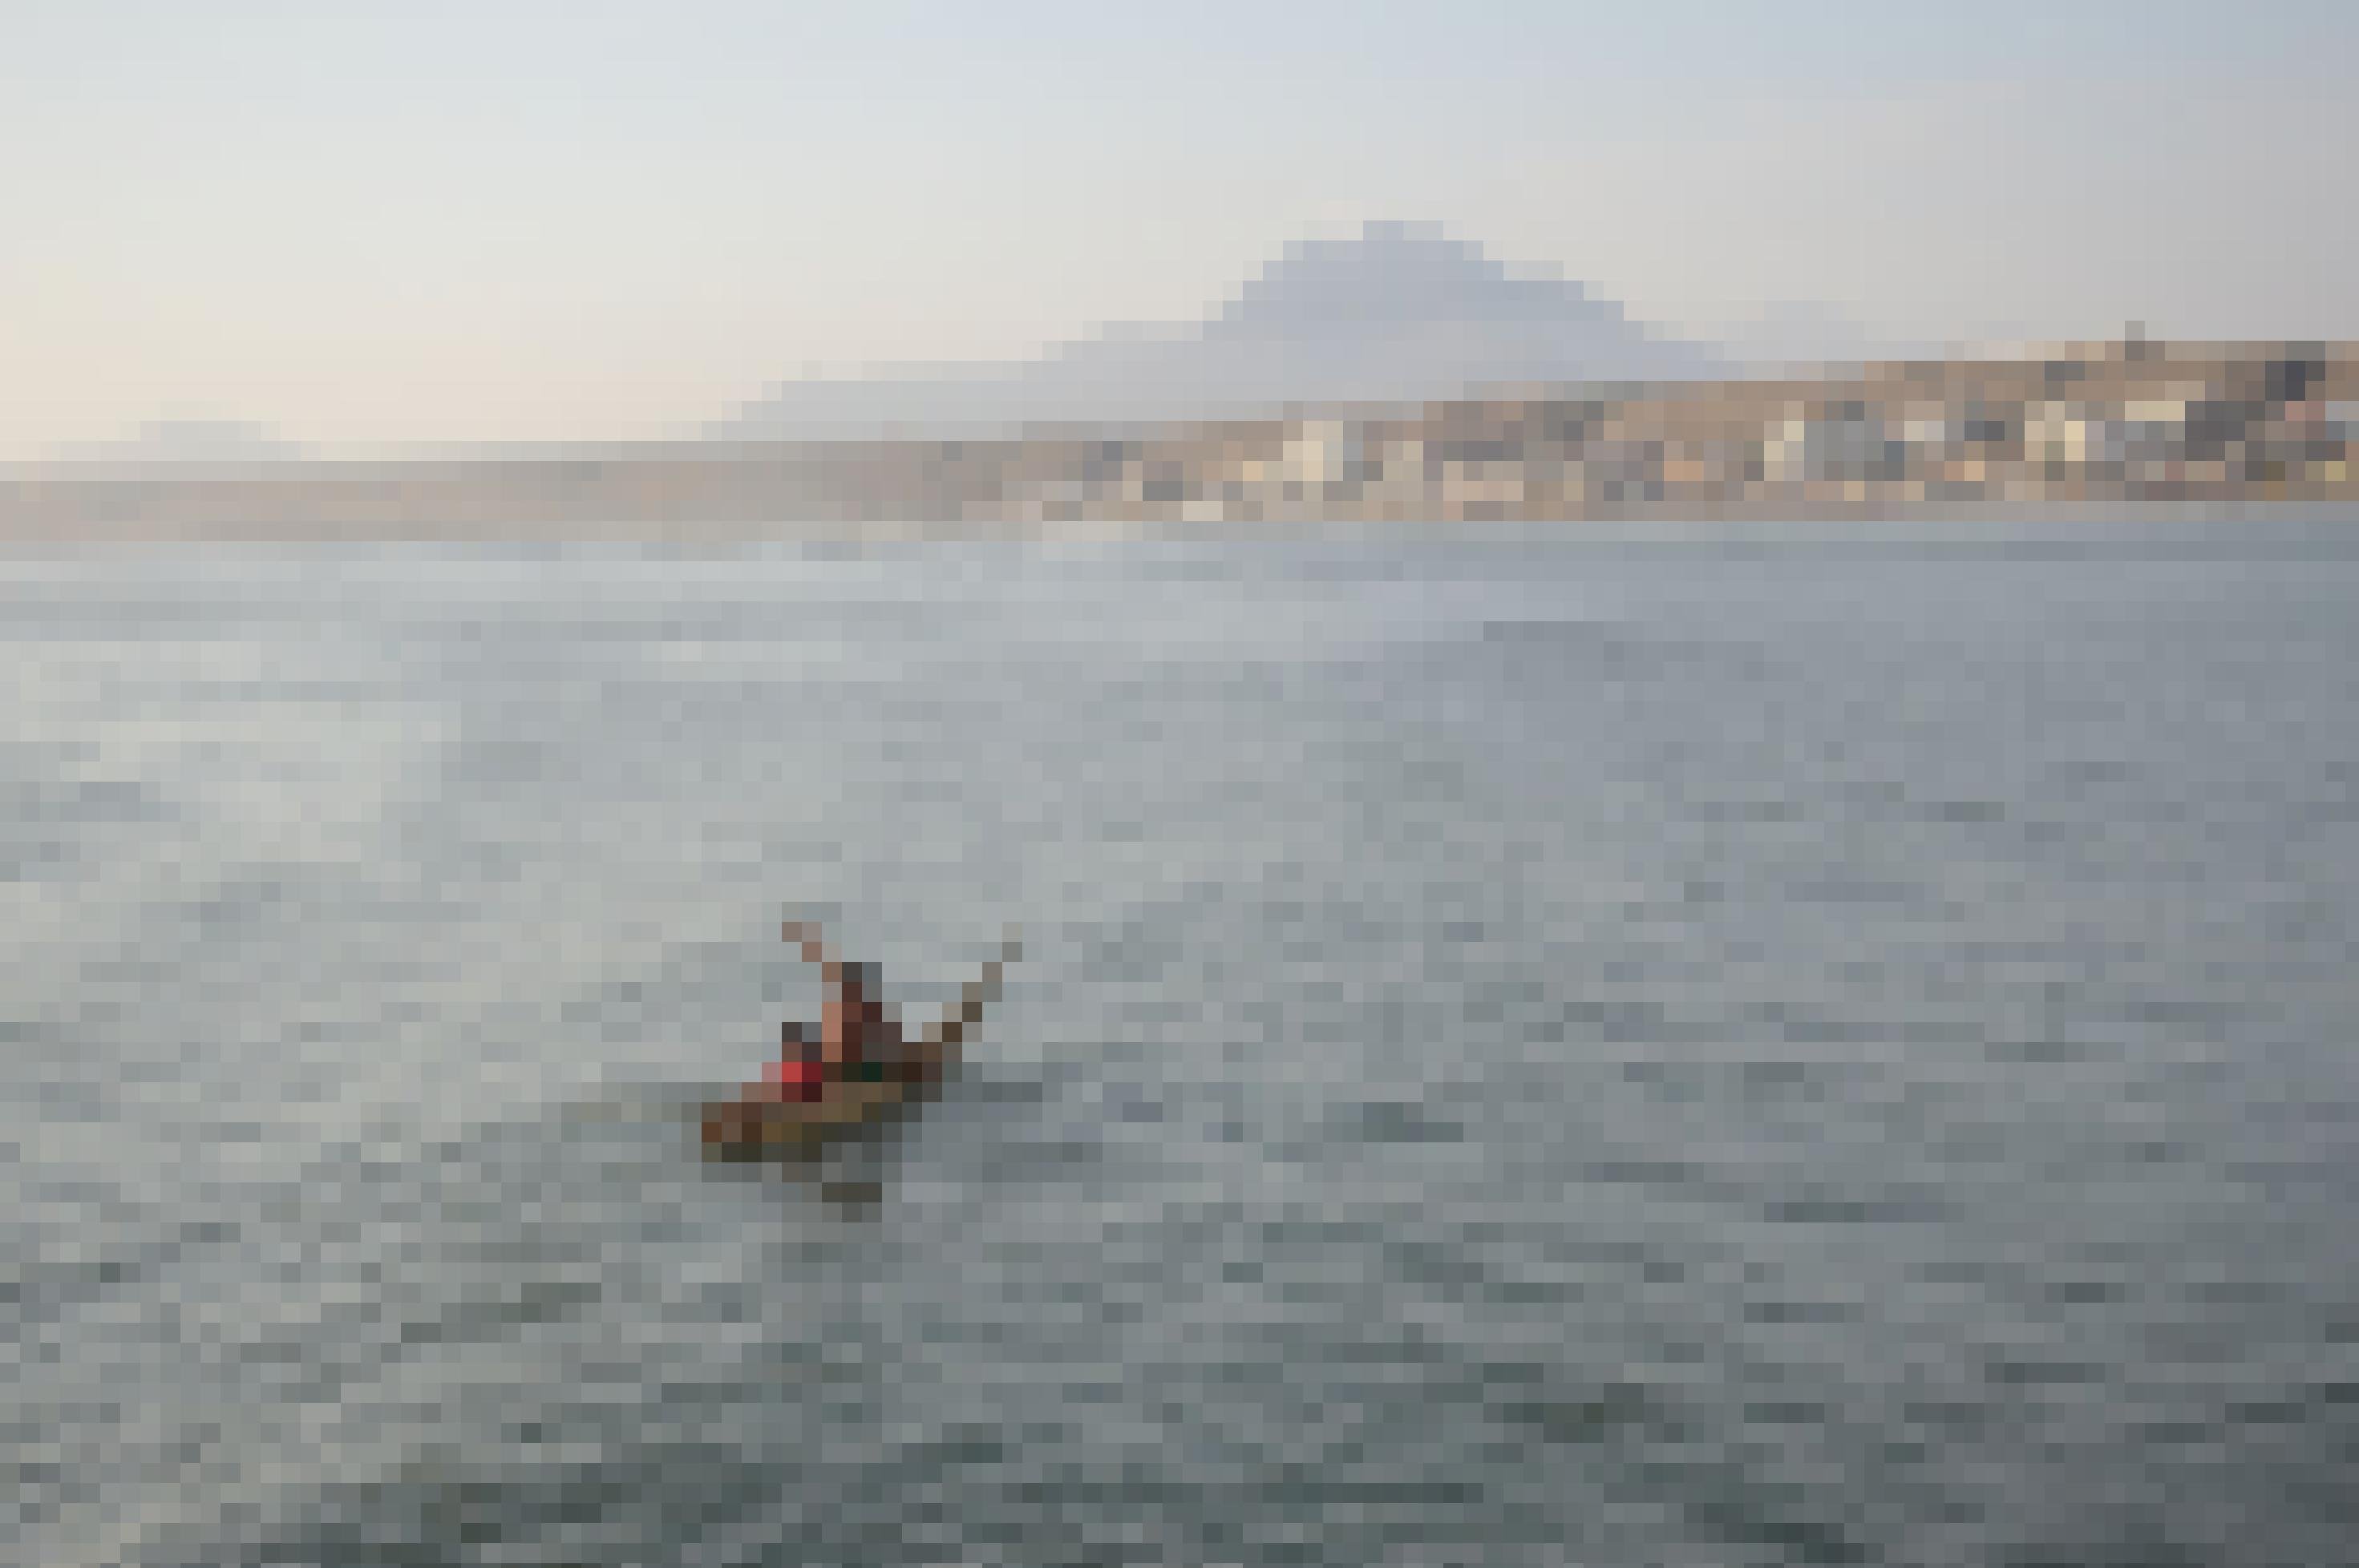 Blick vom Meer auf eine Küste. In der Mitte des Wassers ein Schilfboot, auf dem ein paddelnder Mann und ein Kind sitzt.